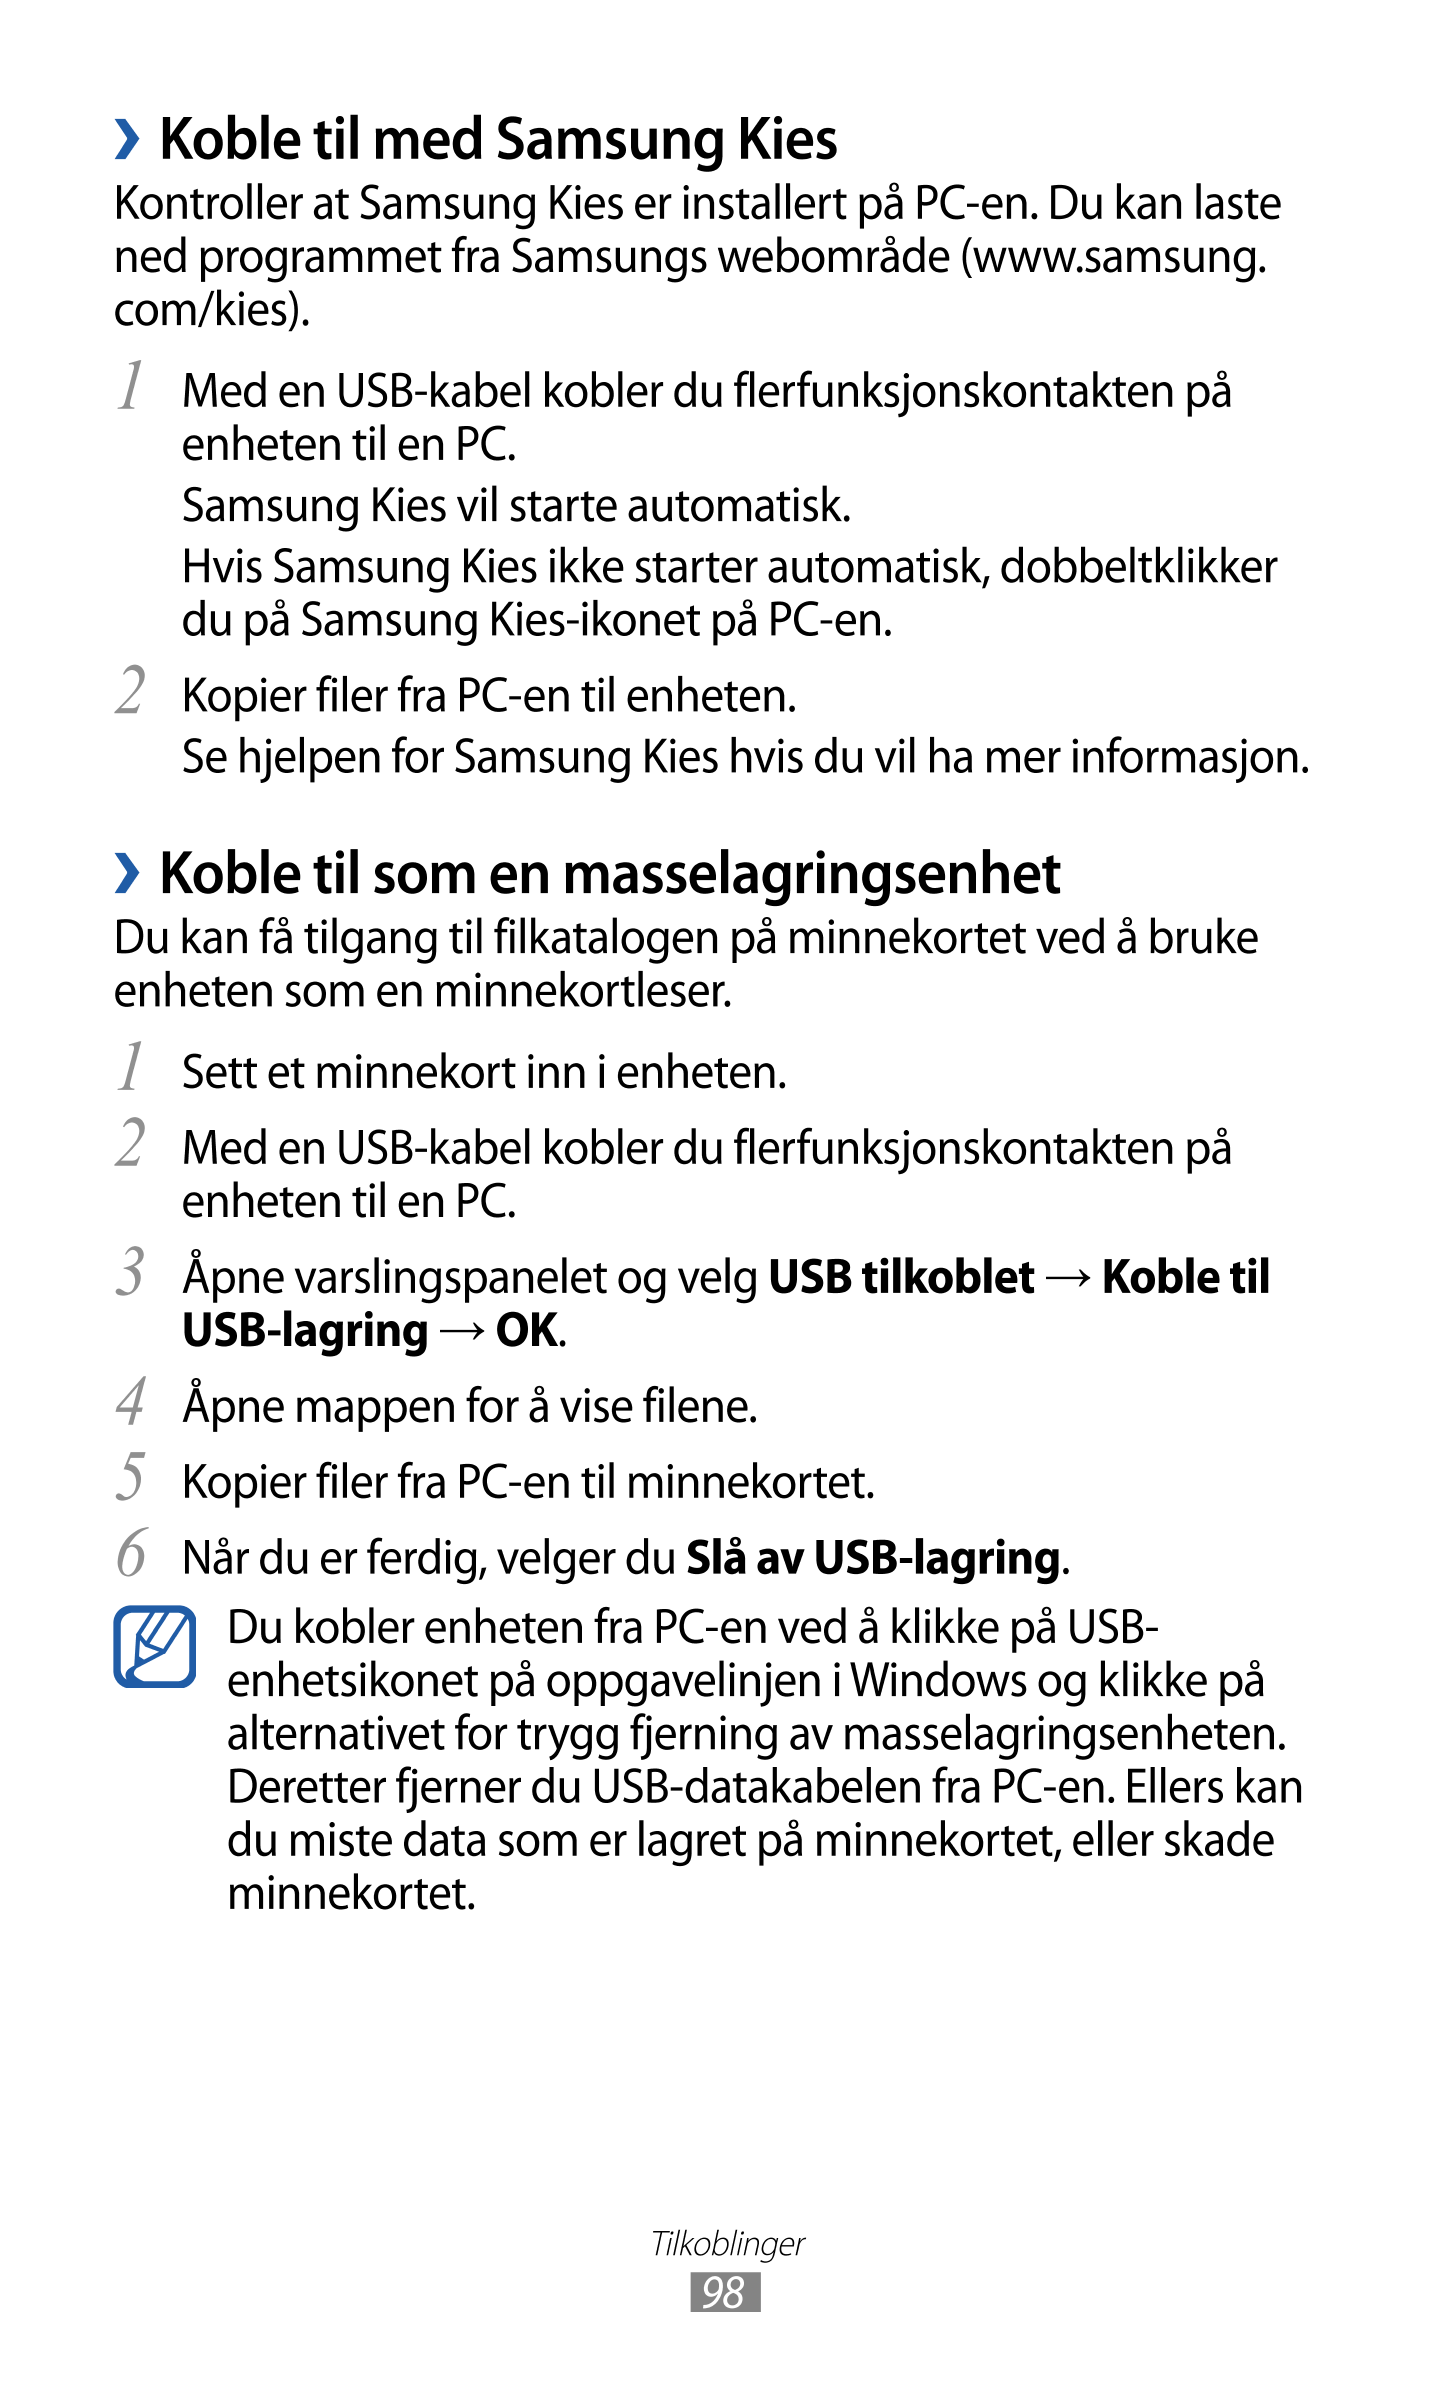 › Koble til med Samsung Kies
Kontroller at Samsung Kies er installert på PC-en. Du kan laste 
ned programmet fra Samsungs webomr